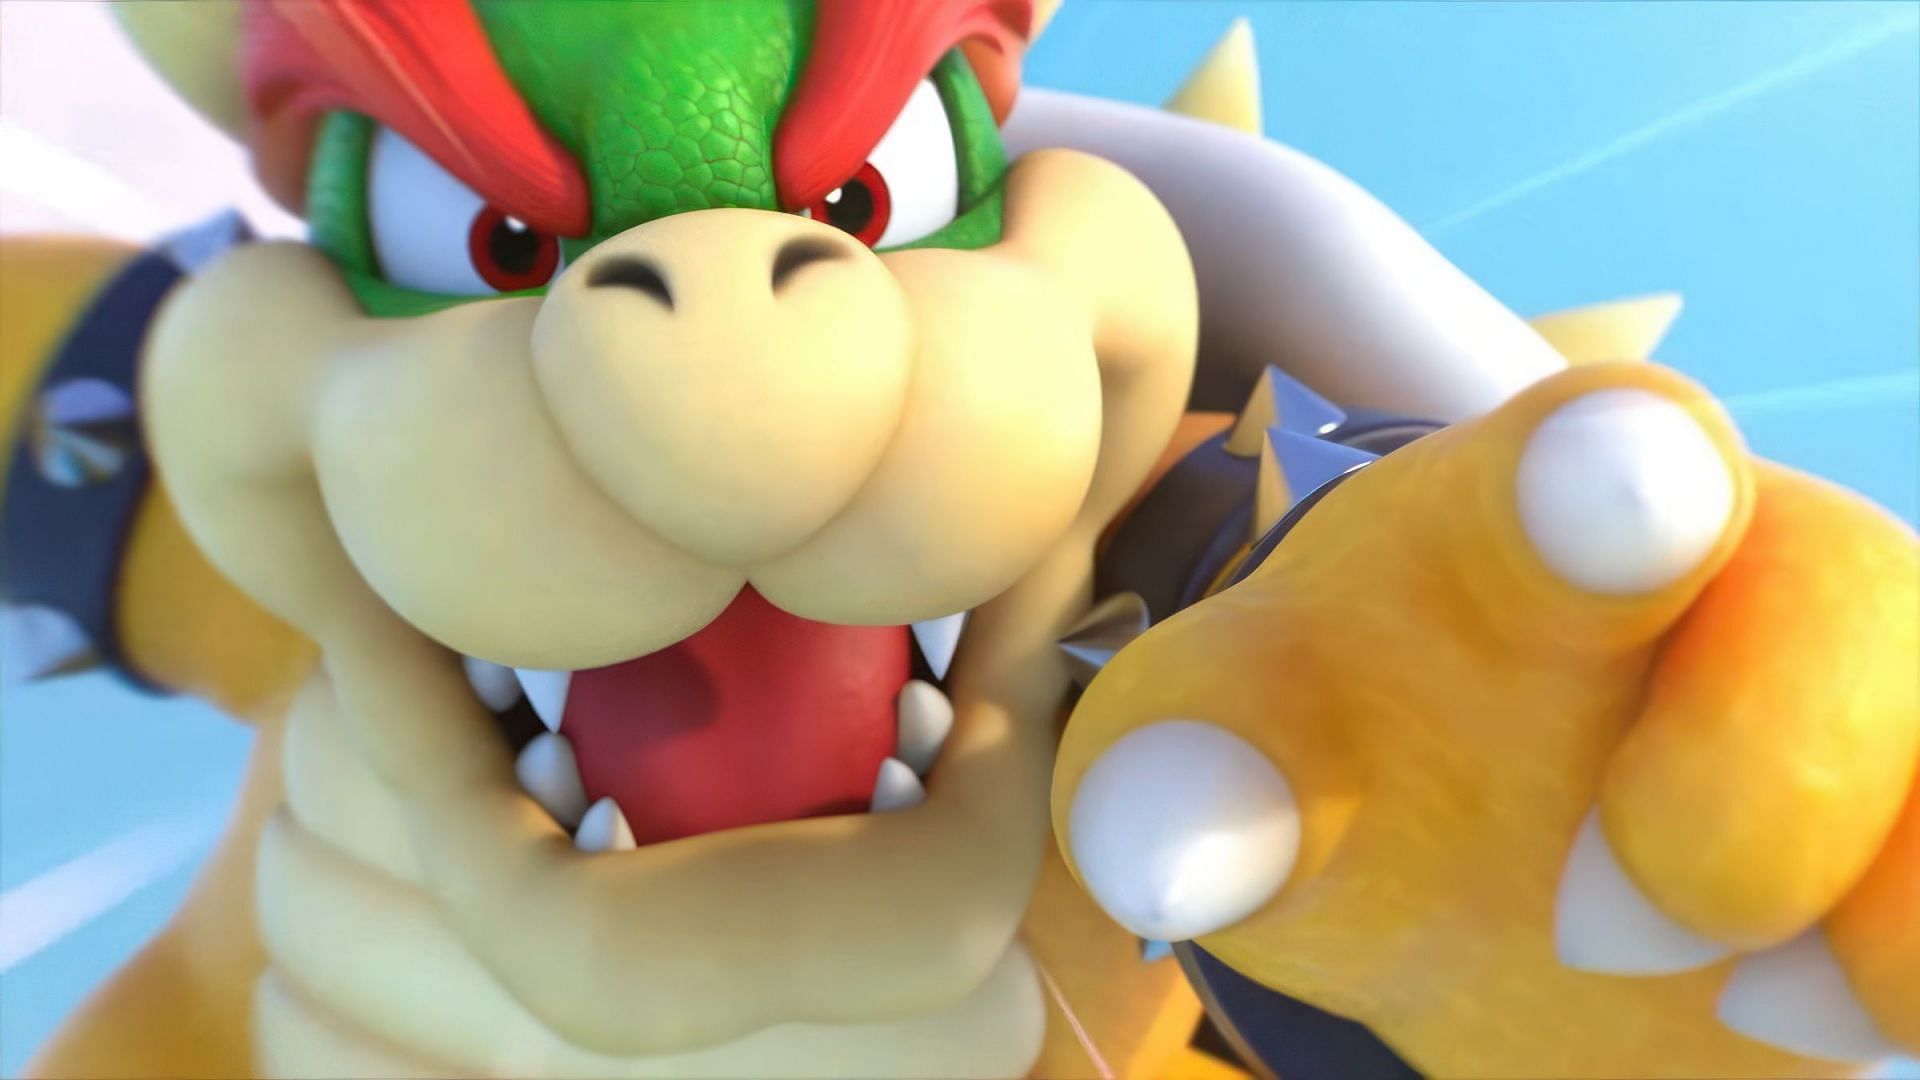 Bowser in Super Mario (Image via Nintendo)